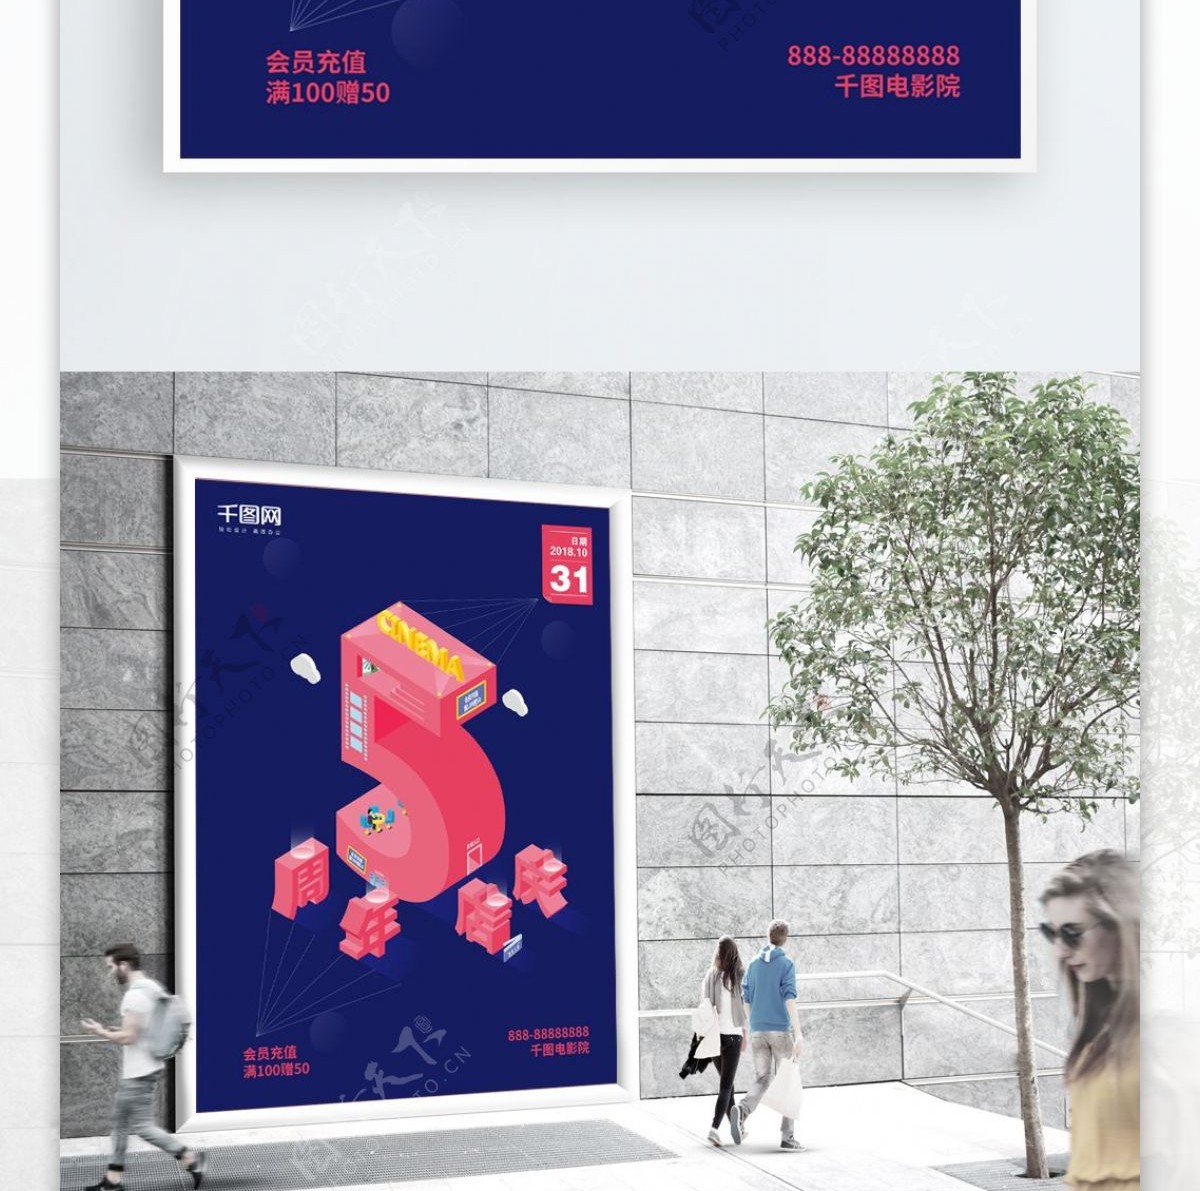 2.5D周年庆电影院促销海报